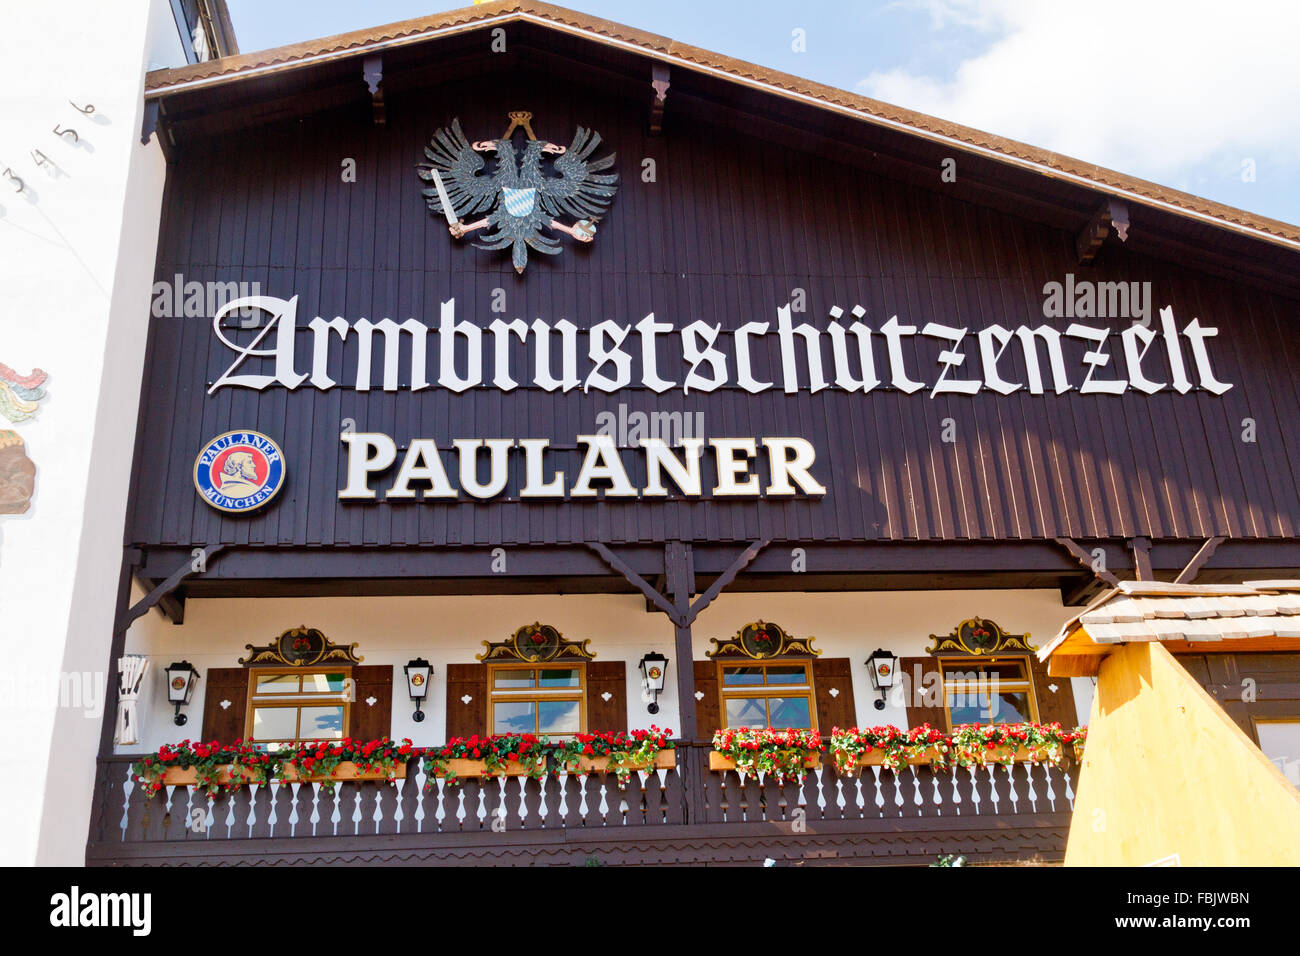 Façade de beer hall à l'Oktoberfest à Munich, Allemagne Banque D'Images